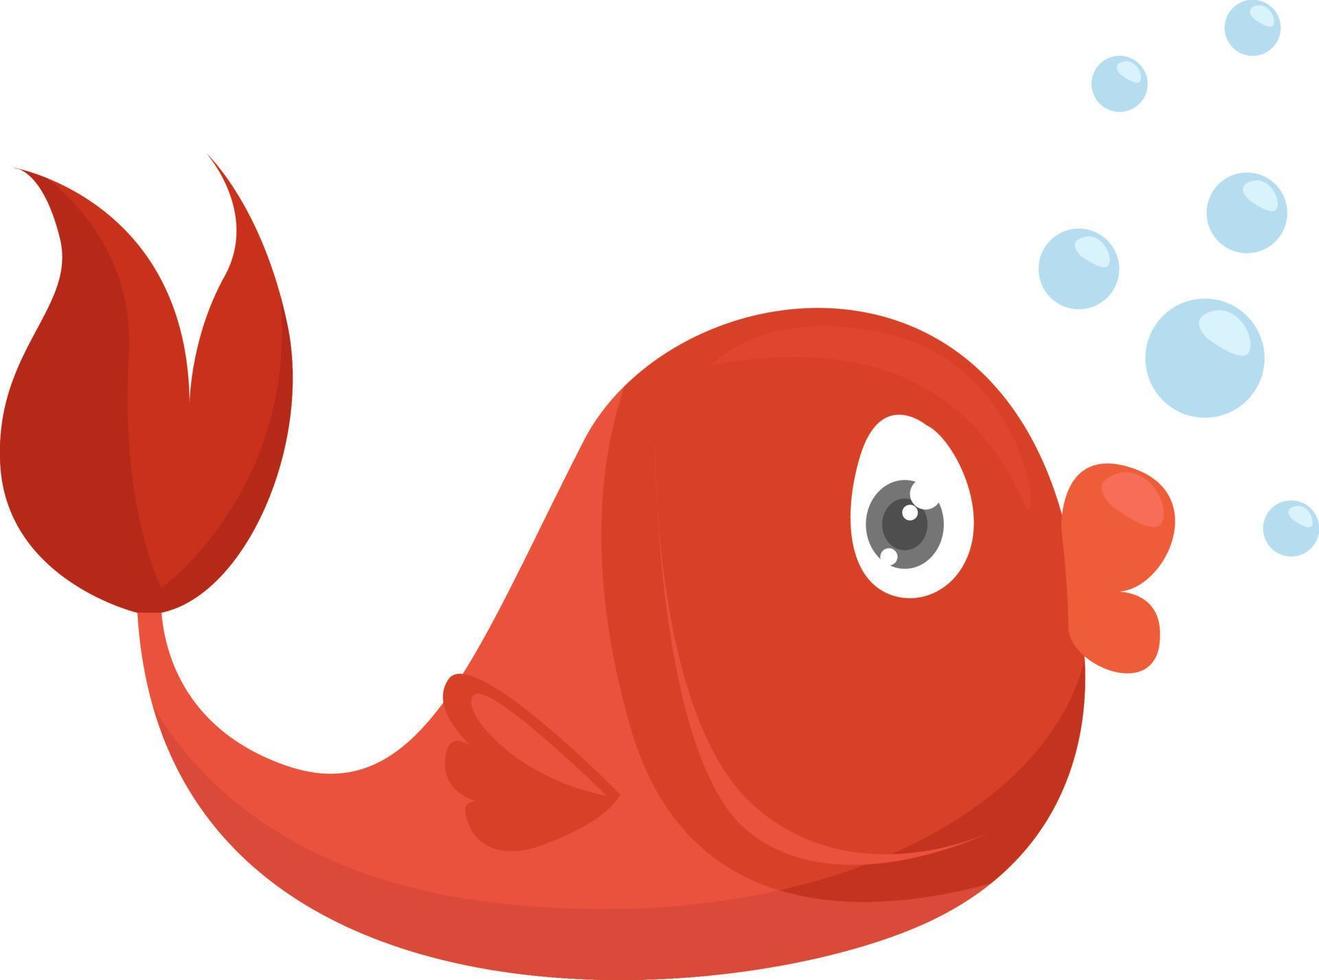 petit poisson rouge, illustration, vecteur sur fond blanc.